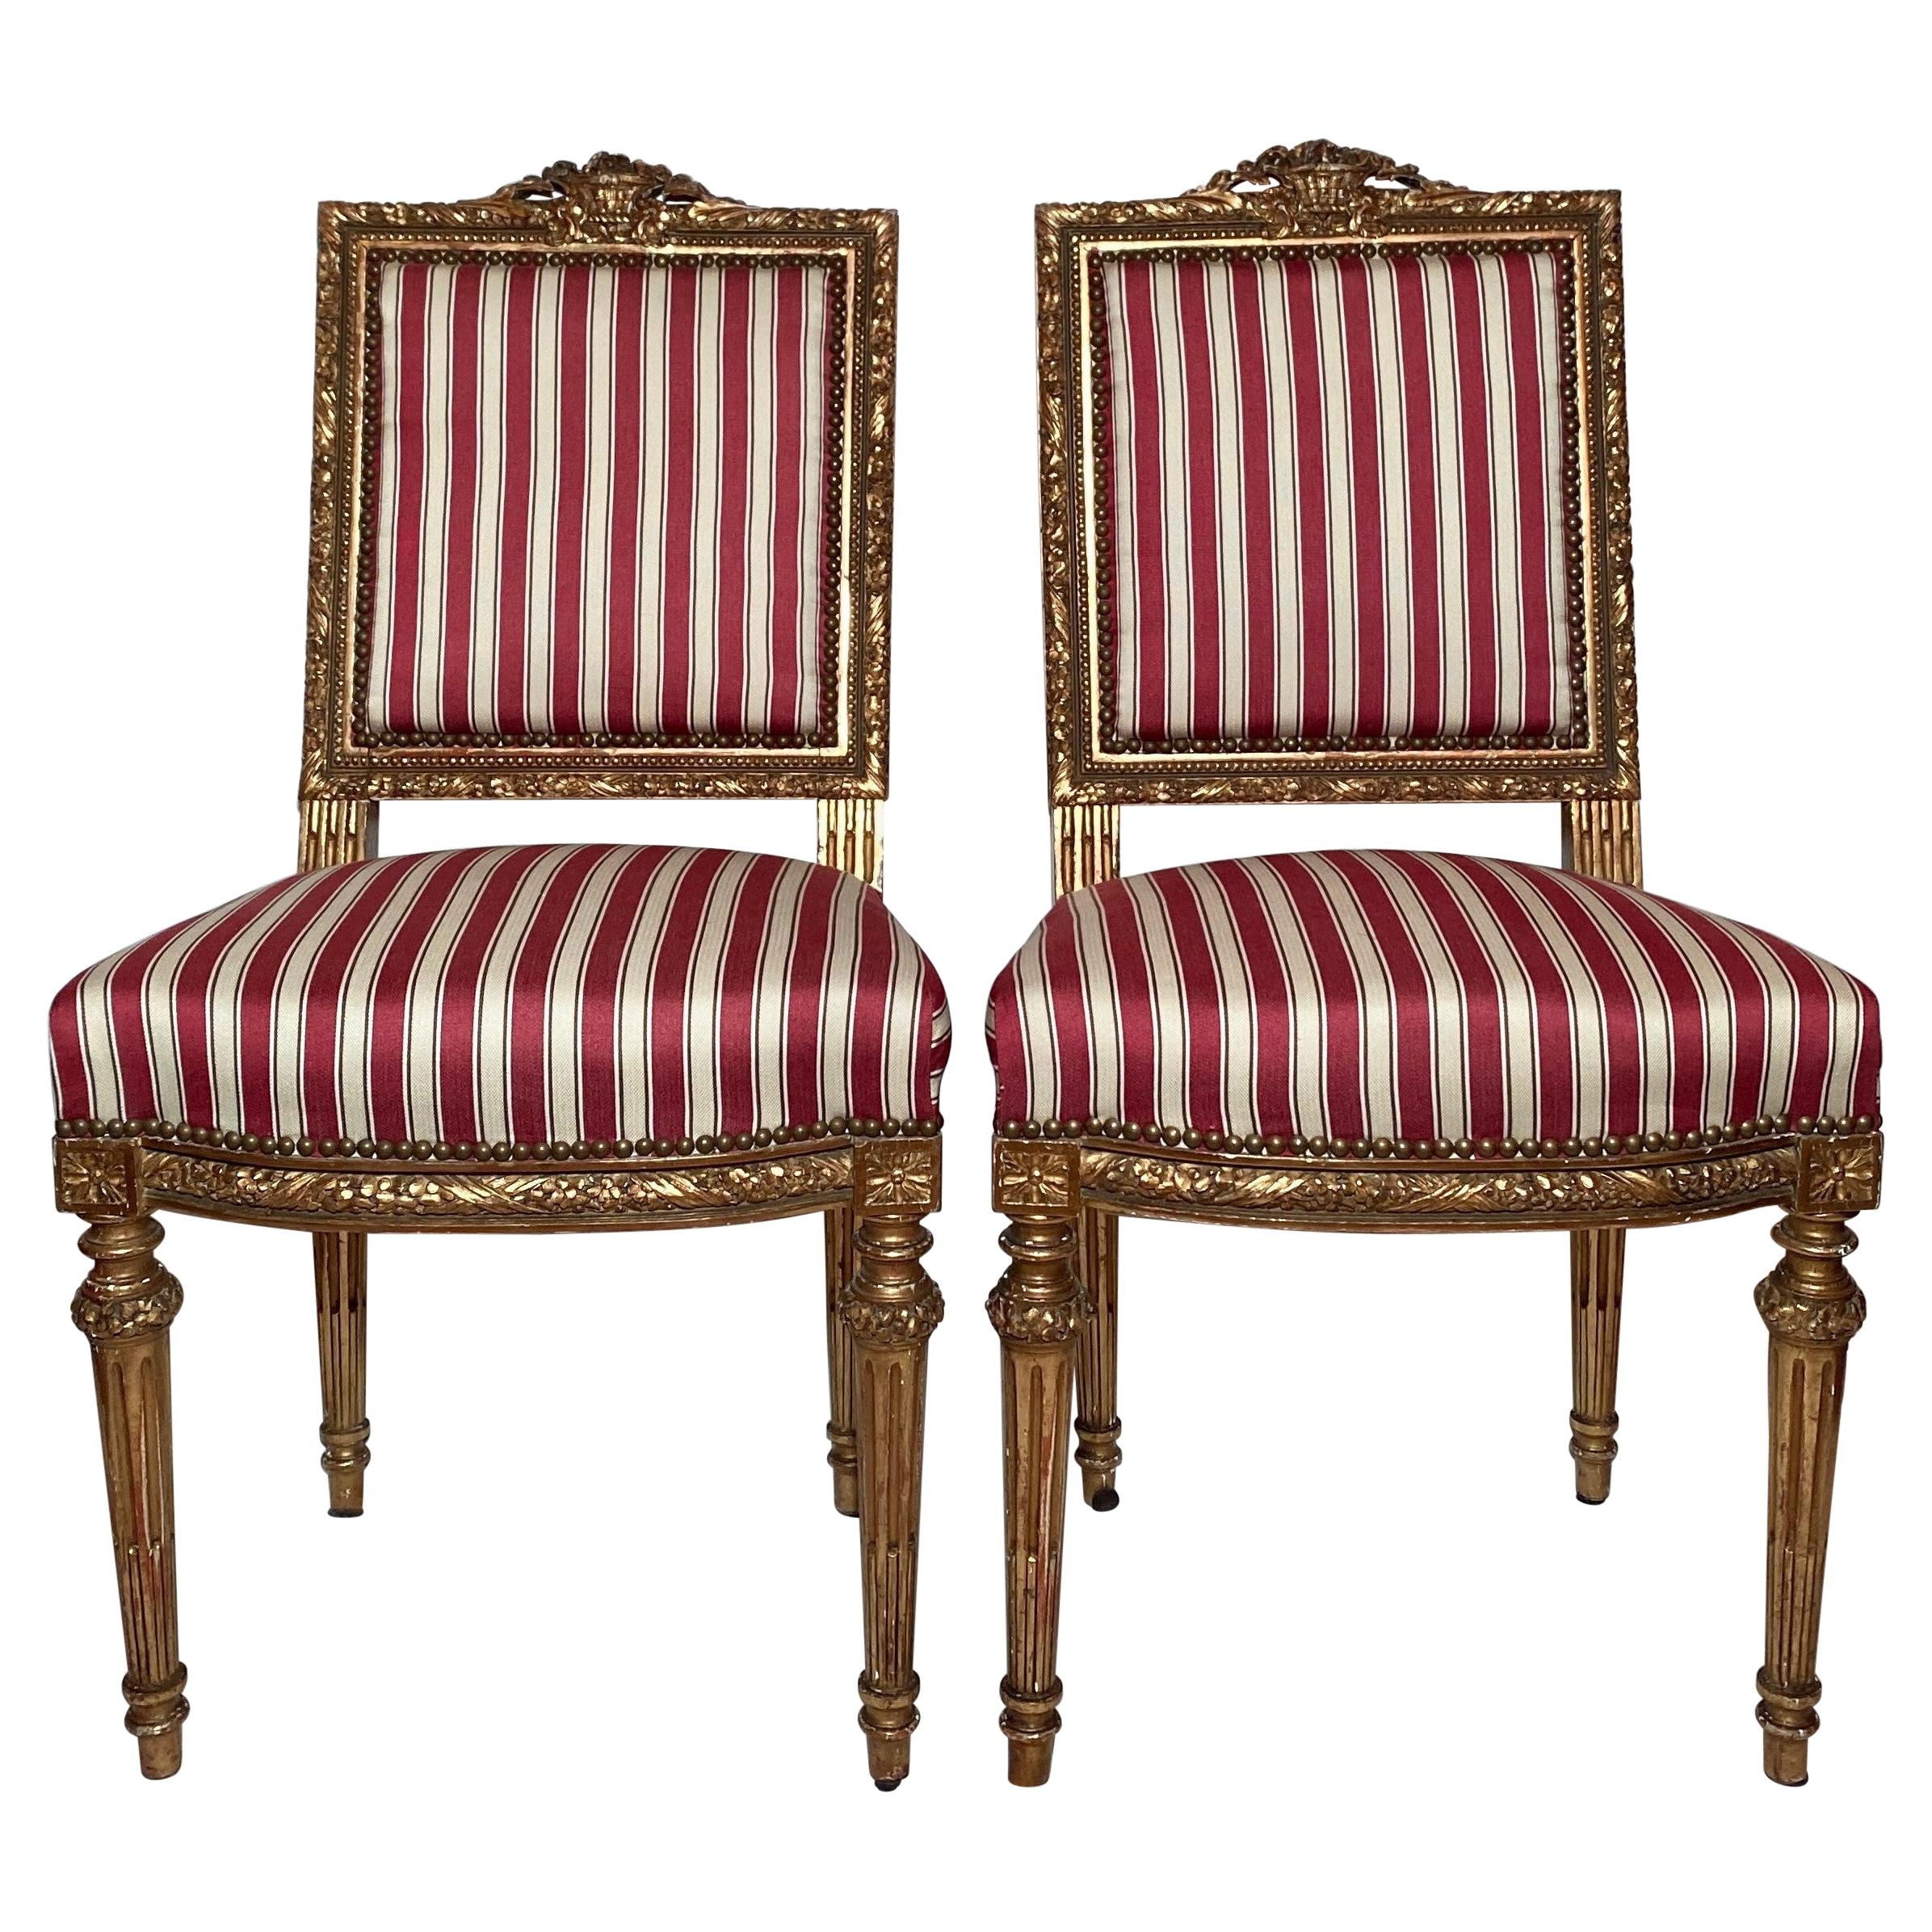 Paire de chaises d'appoint françaises anciennes Louis XVI du 18ème siècle, bois sculpté et or